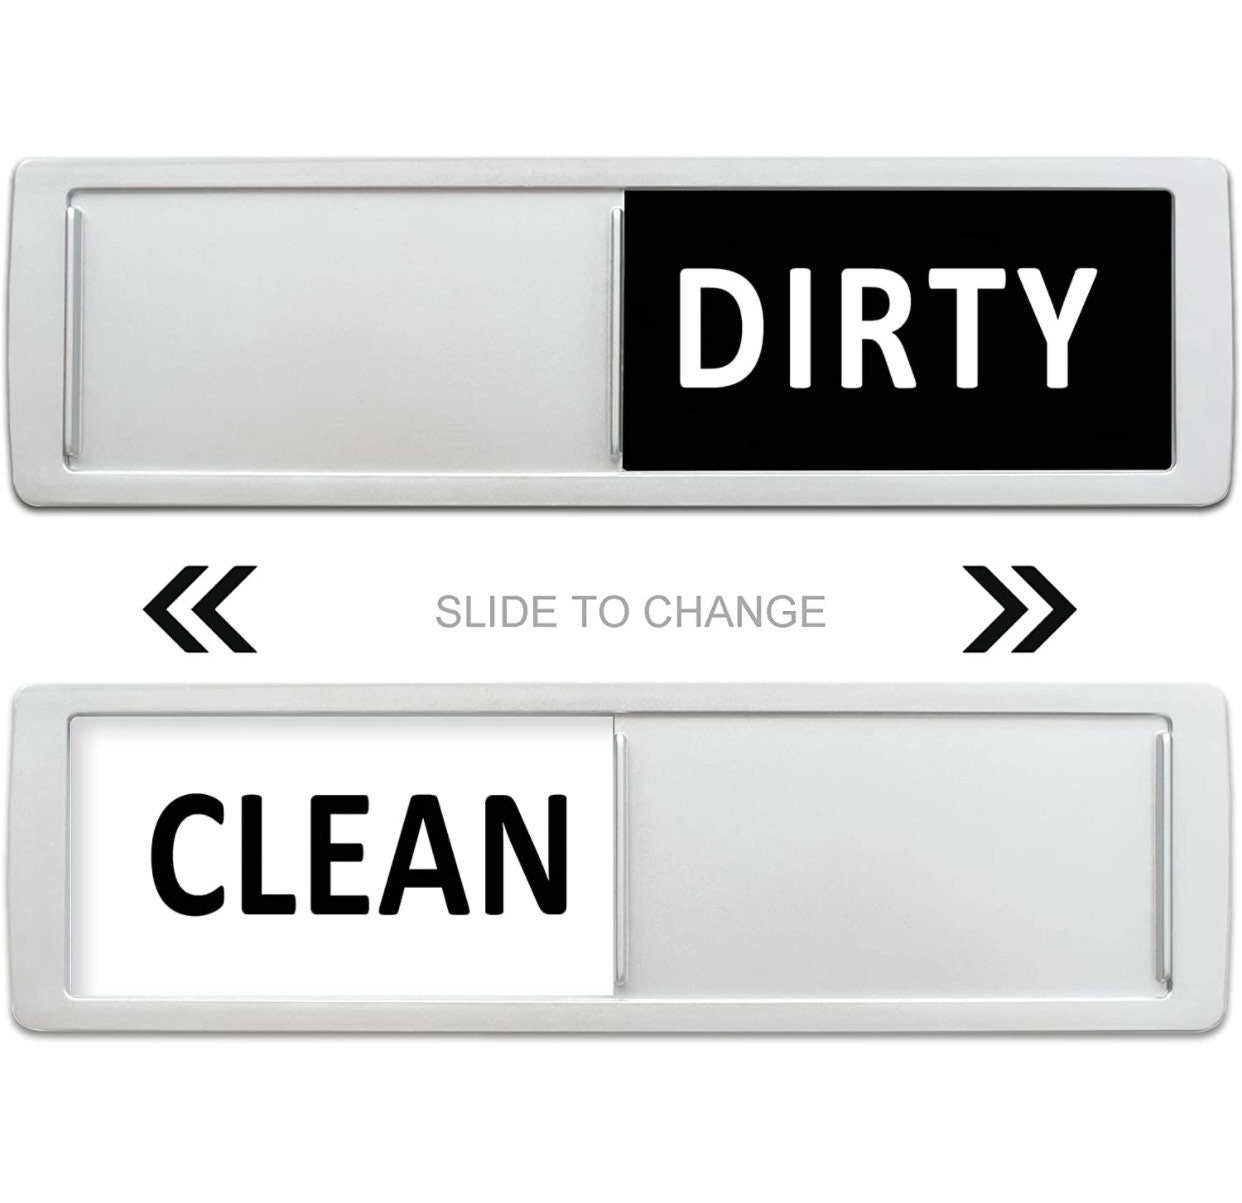  Dishwasher Clean Dirty Magnet Sign, Wooden Clean Dirty Sign for  Dishwasher, Clean and Dirty Signs for Kitchen Dishwashers, No-Scratch  Dishwasher Magnet Slide (Black) : Home & Kitchen